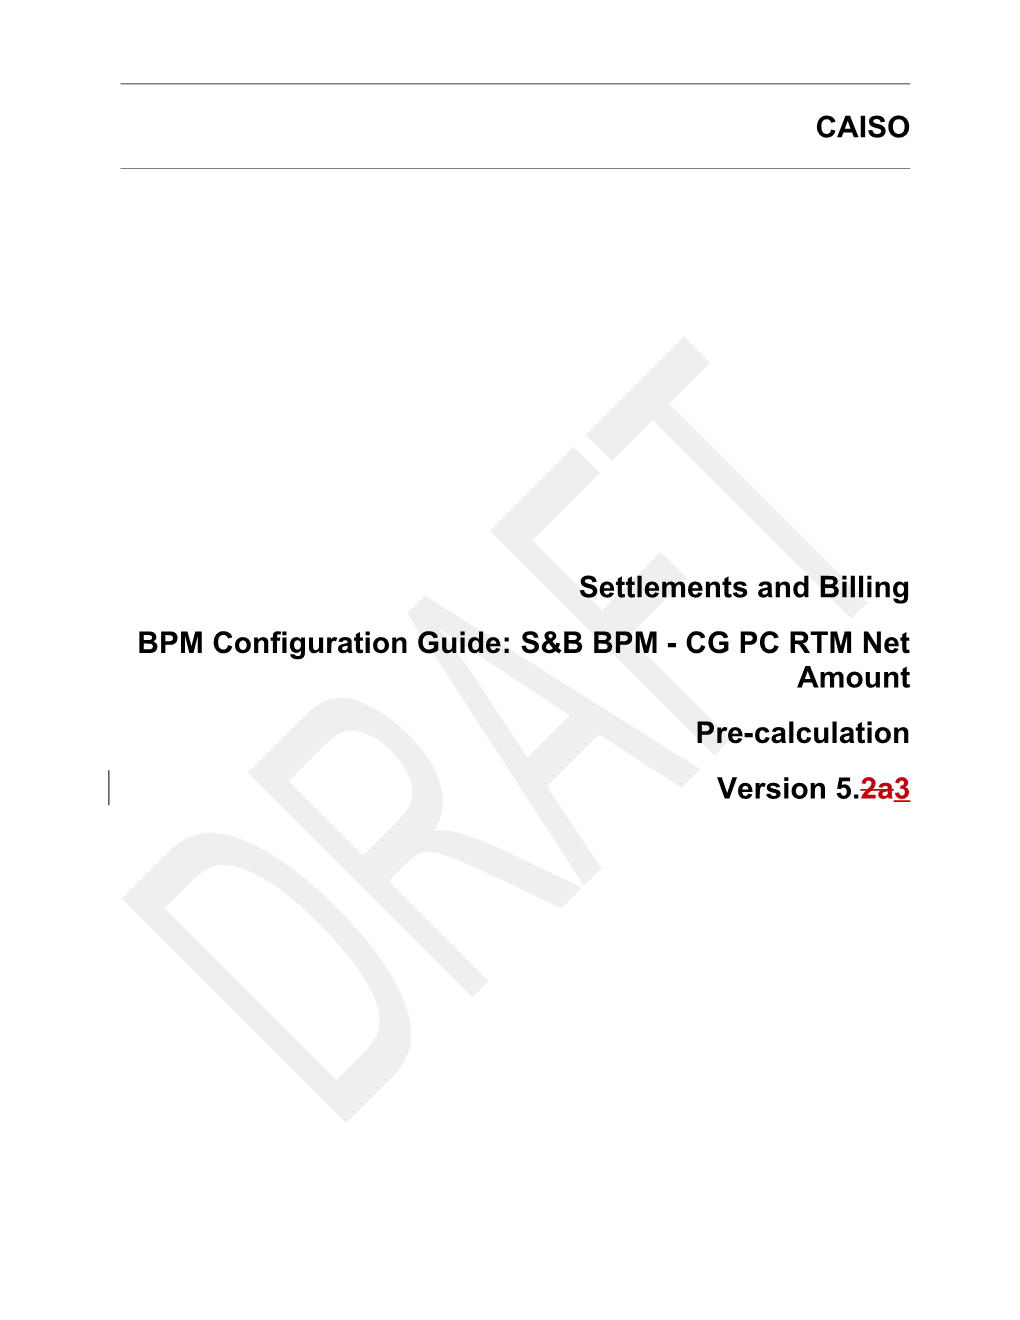 S&B BPM - CG PC RTM Net Amount